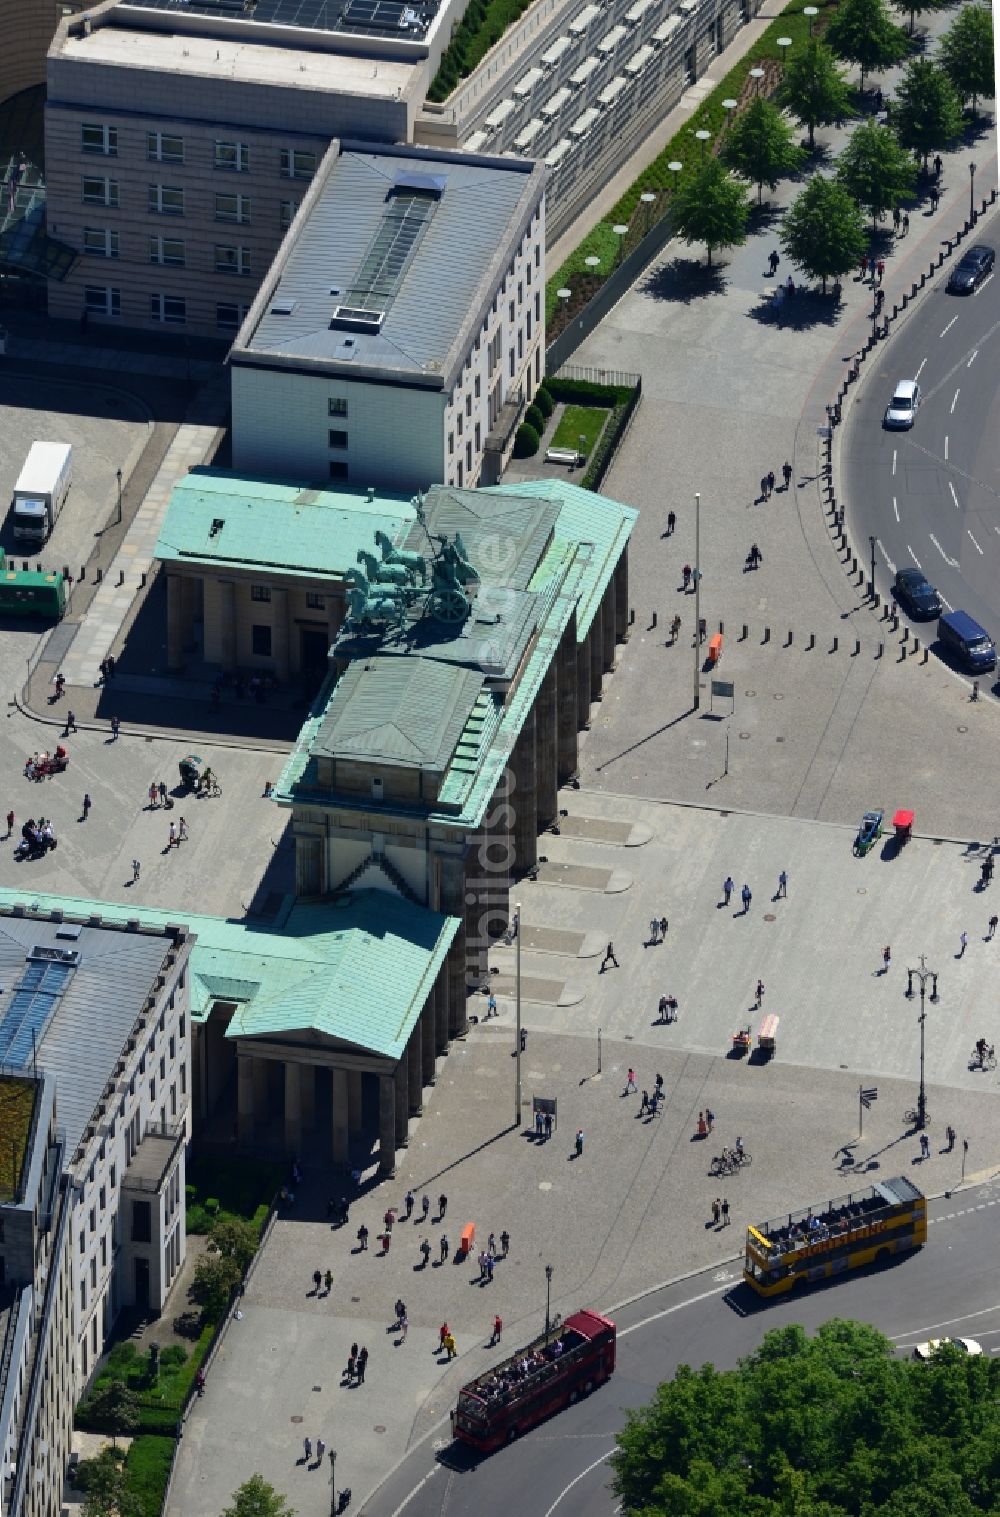 Berlin aus der Vogelperspektive: Sehenswürdigkeit und Wahrzeichen Brandenburger Tor am Pariser Platz im Ortsteil Mitte von Berlin